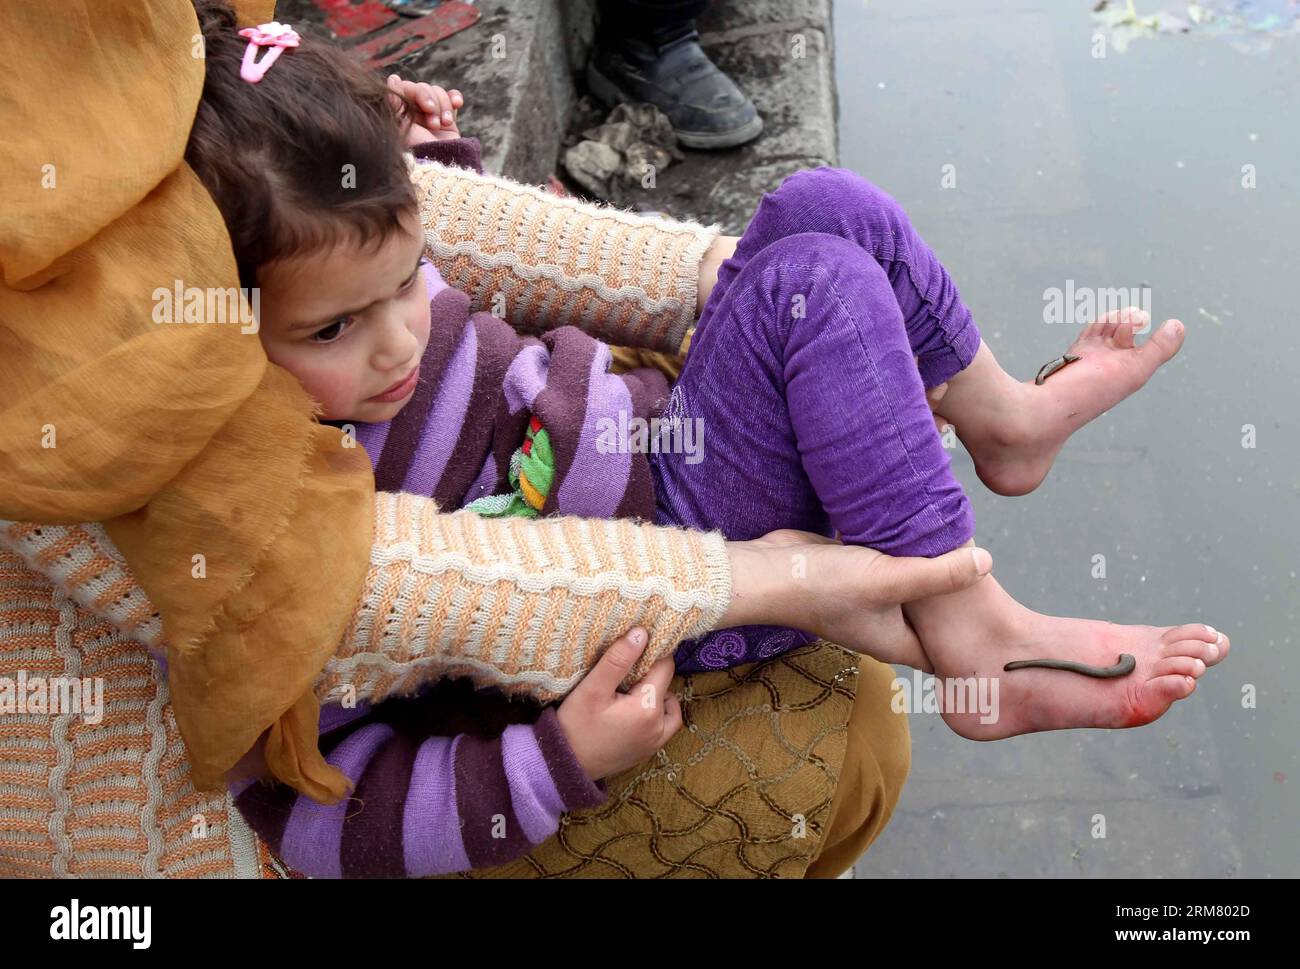 (140321) -- SRINAGAR, 21 mars 2014 (Xinhua) -- les sangsuces sucent le sang des pieds d'un enfant dans le cadre d'un traitement, à la périphérie de Srinagar, capitale estivale du Cachemire contrôlé par l'Inde, le 21 mars 2014. Les travailleurs médicaux traditionnels du Cachemire contrôlé par l'Inde utilisent les sangsues pour traiter les maladies et les affections cutanées telles que l'arthrite, la goutte, les maux de tête chroniques et la sinusite. (Xinhua/Javed Dar) (srb) CACHEMIRE-SRINAGAR-TRAITEMENT DE SANTÉ TRADITIONNEL-LEECH PUBLICATIONxNOTxINxCHN Srinagar Mars 21 2014 les sangsues de XINHUA sucent le sang des pieds d'un enfant dans le cadre d'un traitement À la périphérie de Srin Banque D'Images